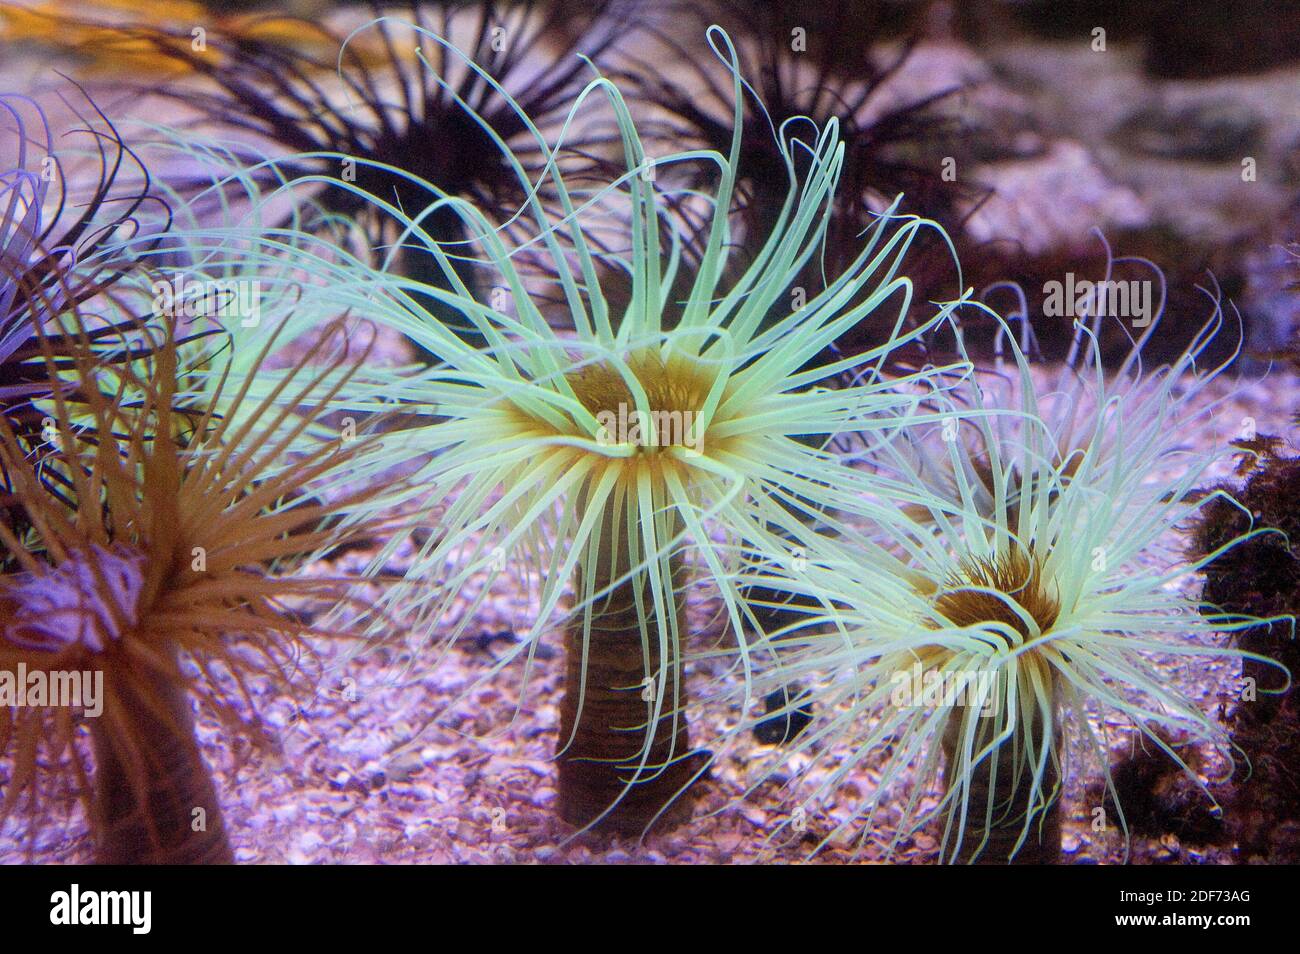 L'anemone cilindrico (Cerianthus membranaceus) è un anemone tubolare con tentacoli non retrattili. Foto Stock